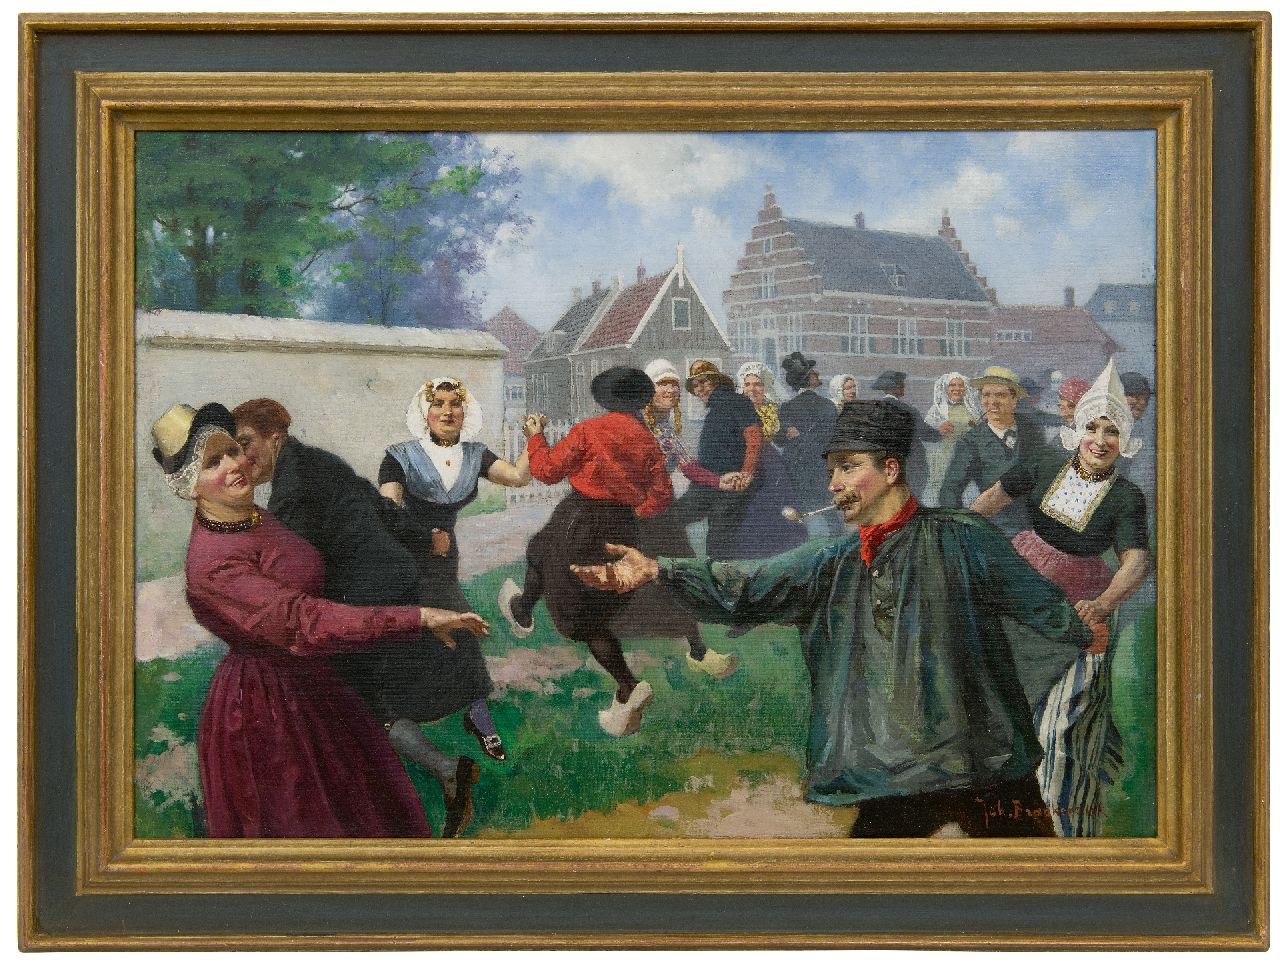 Braakensiek J.C.  | 'Johan' Coenraad Braakensiek | Schilderijen te koop aangeboden | De dans van klederdrachten, olieverf op doek 46,2 x 64,6 cm, gesigneerd rechtsonder